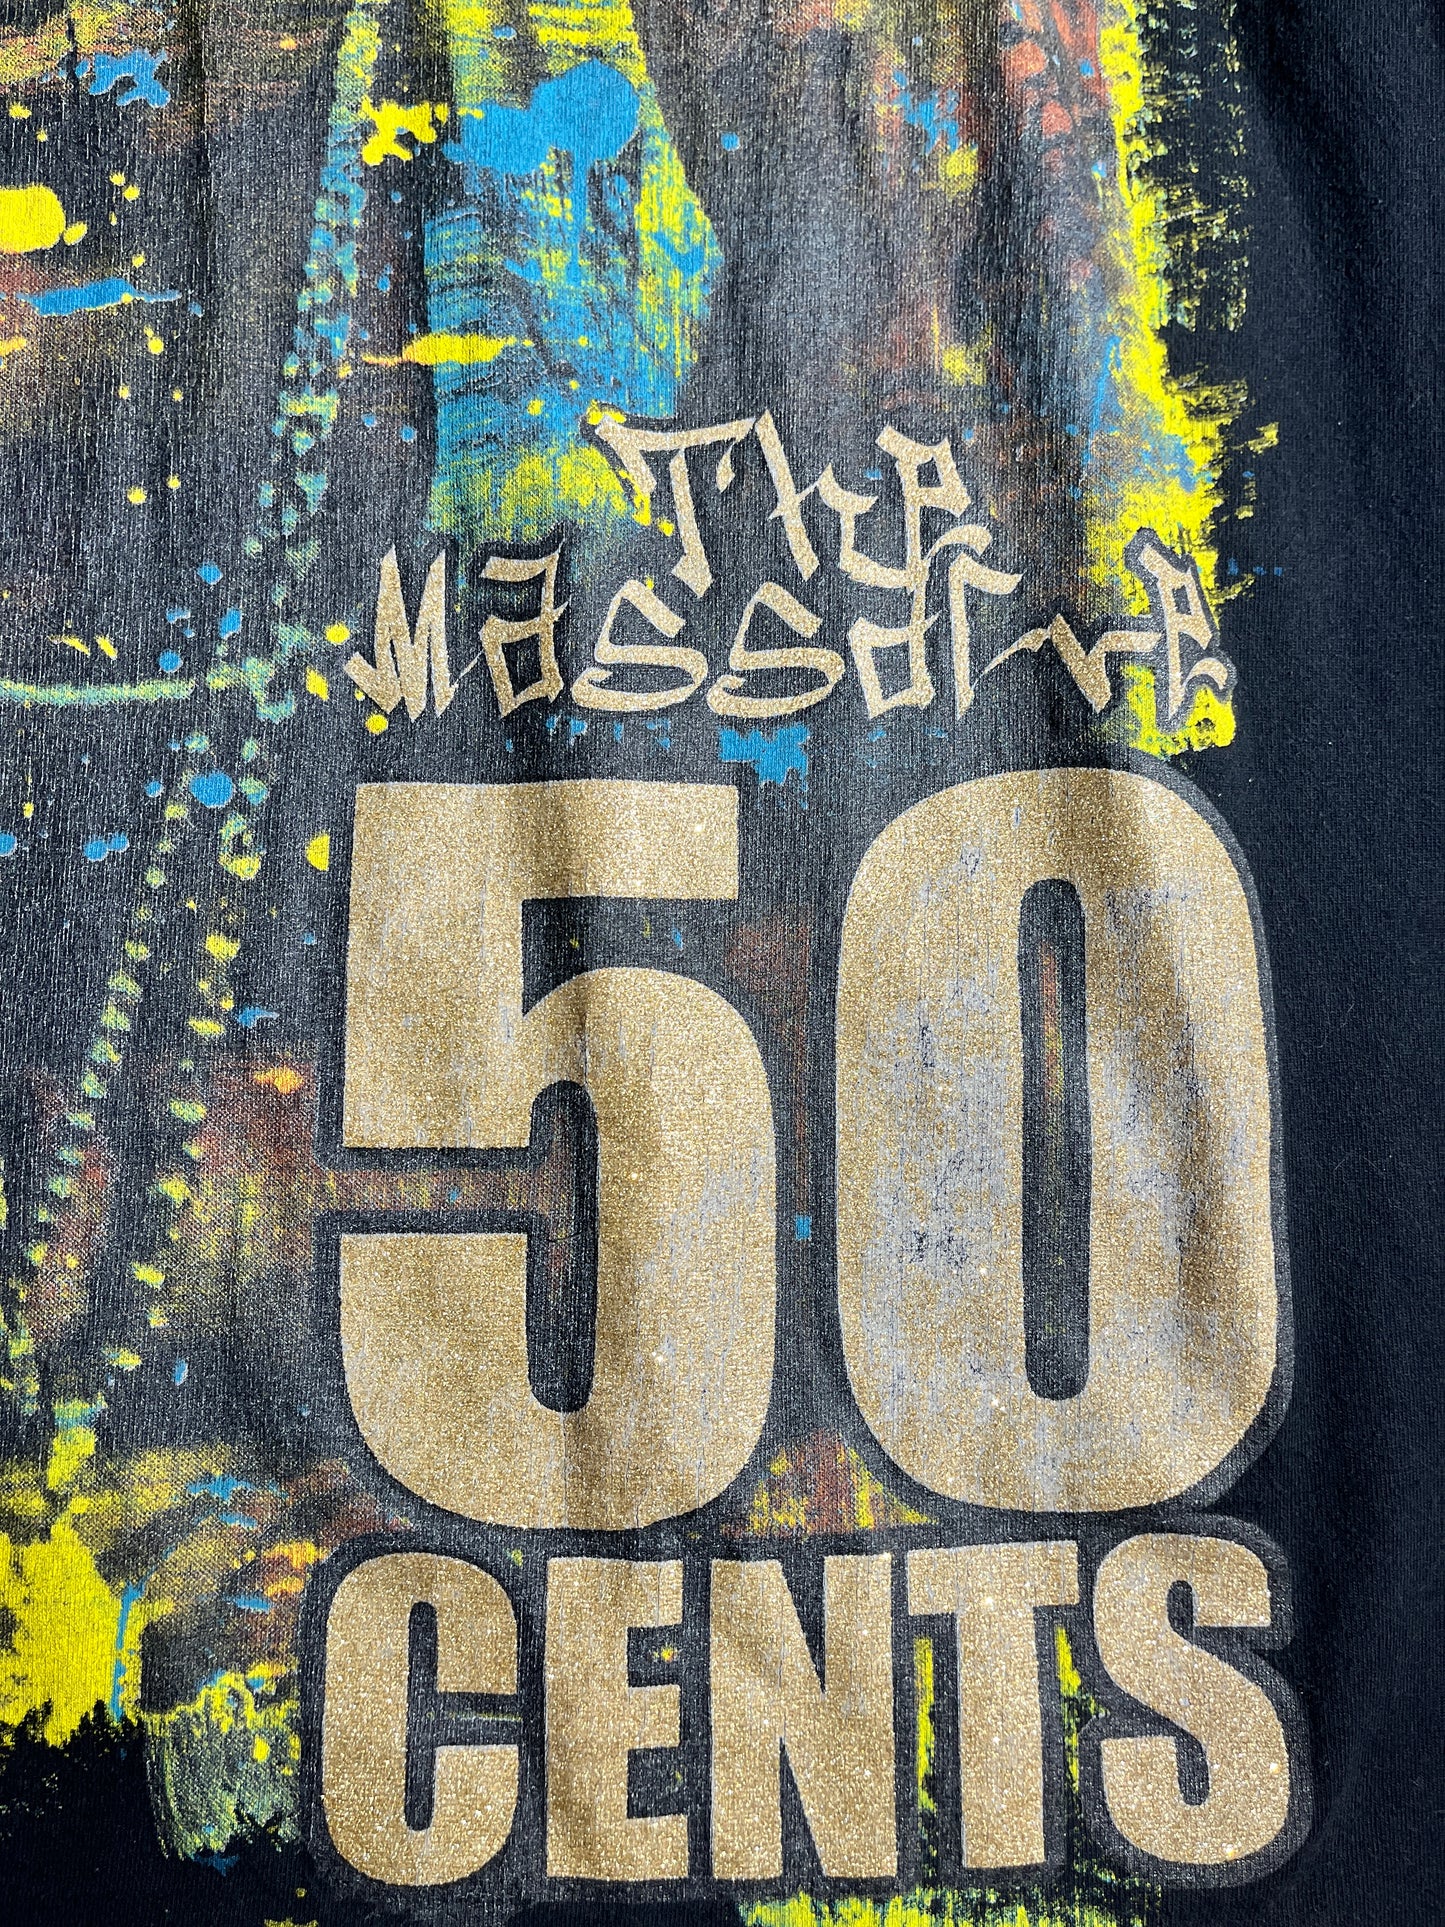 Vintage 50 Cents T-Shirt Rap The Massacre